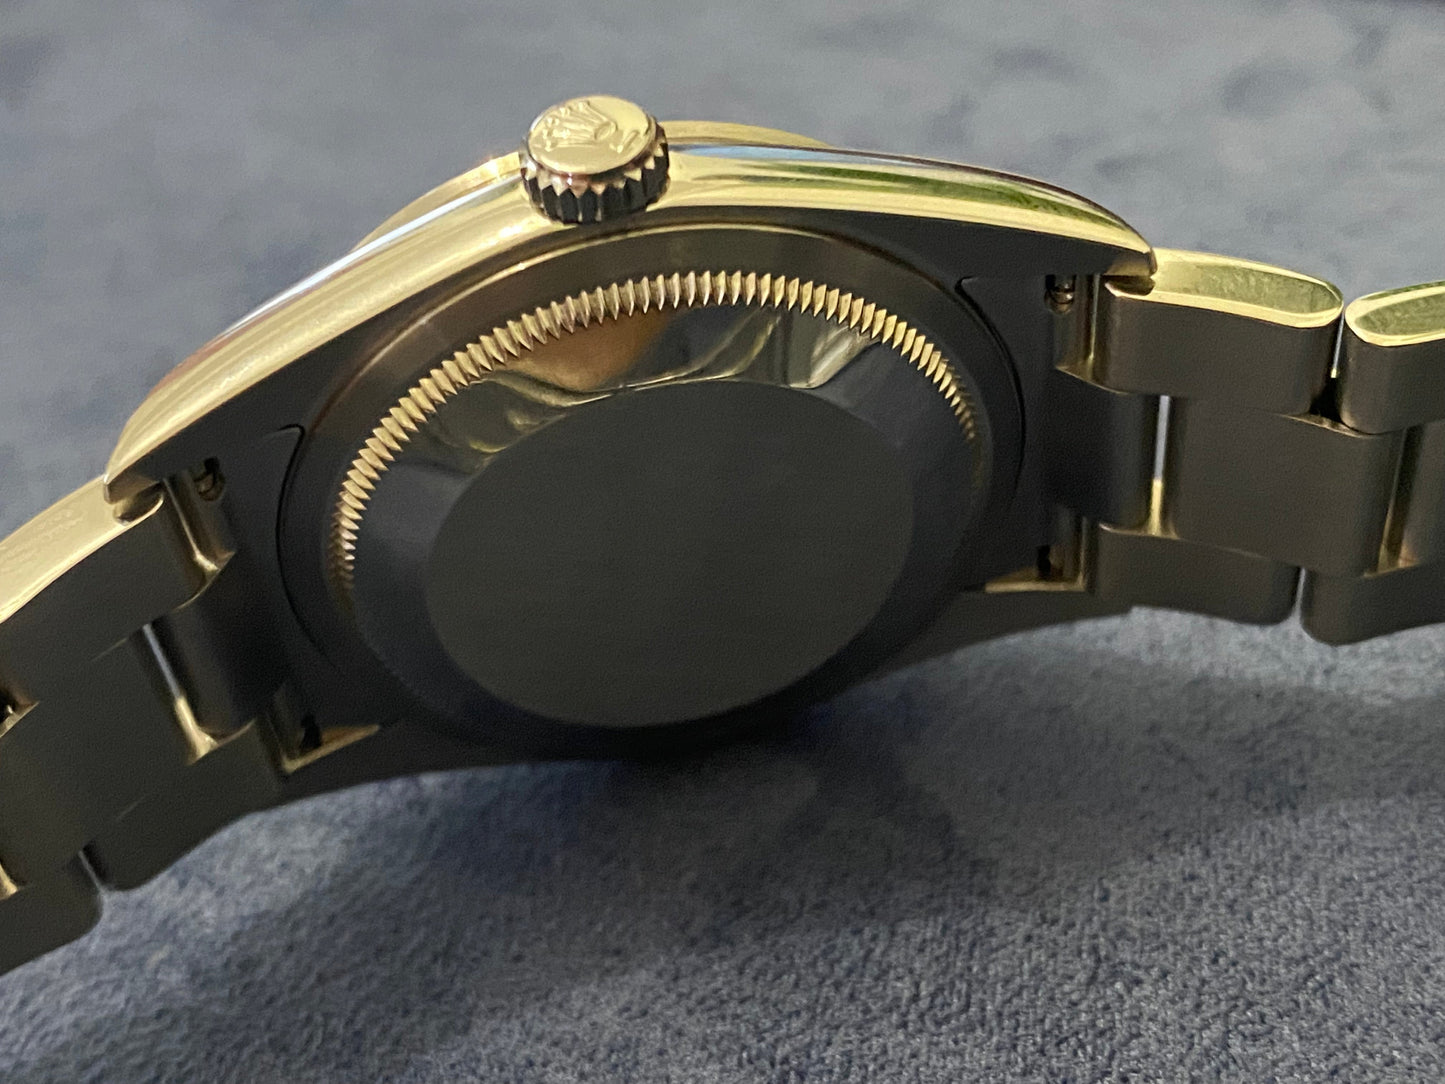 Rolex Explorer 114270 Men's Watch 36mm Automatic - PM Vintage Watches - Rolex